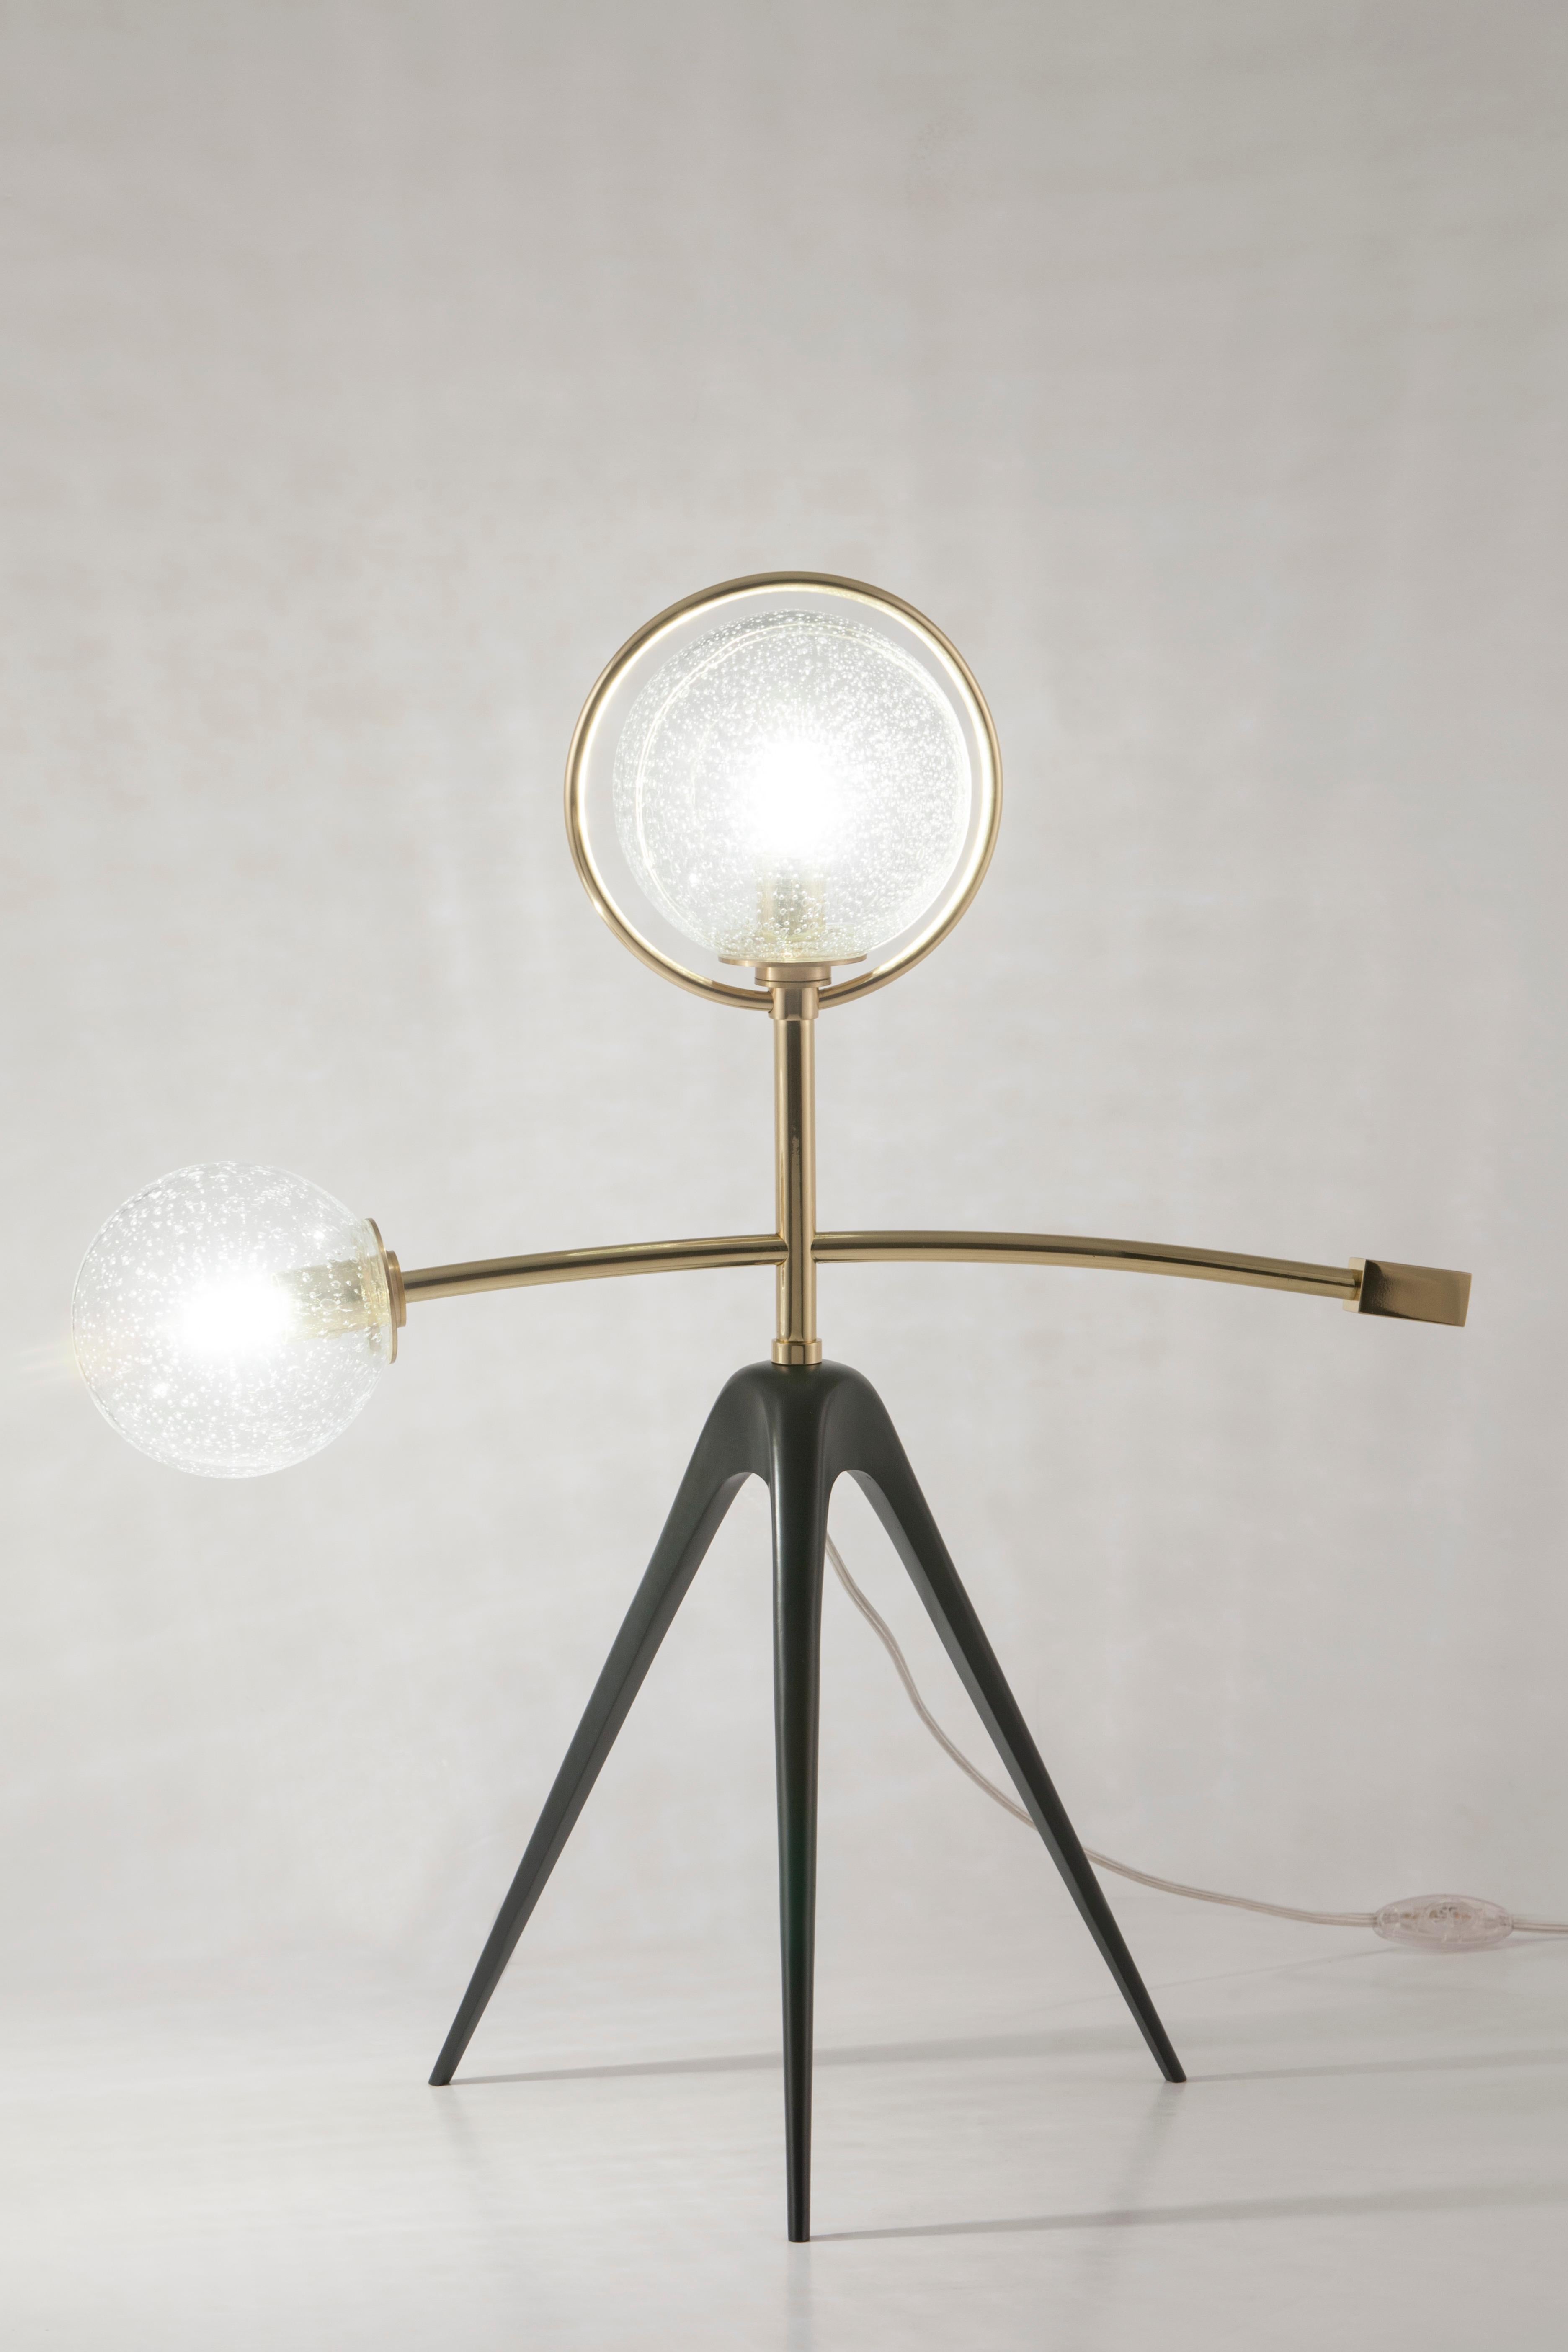 Lampe à poser mobile, Collection Contemporary, fabriquée à la main au Portugal - Europe par Greenapple.

Mobil est un concept d'éclairage moderne et un complément attrayant pour une maison moderne. Une lampe de table qui donne vie aux visions